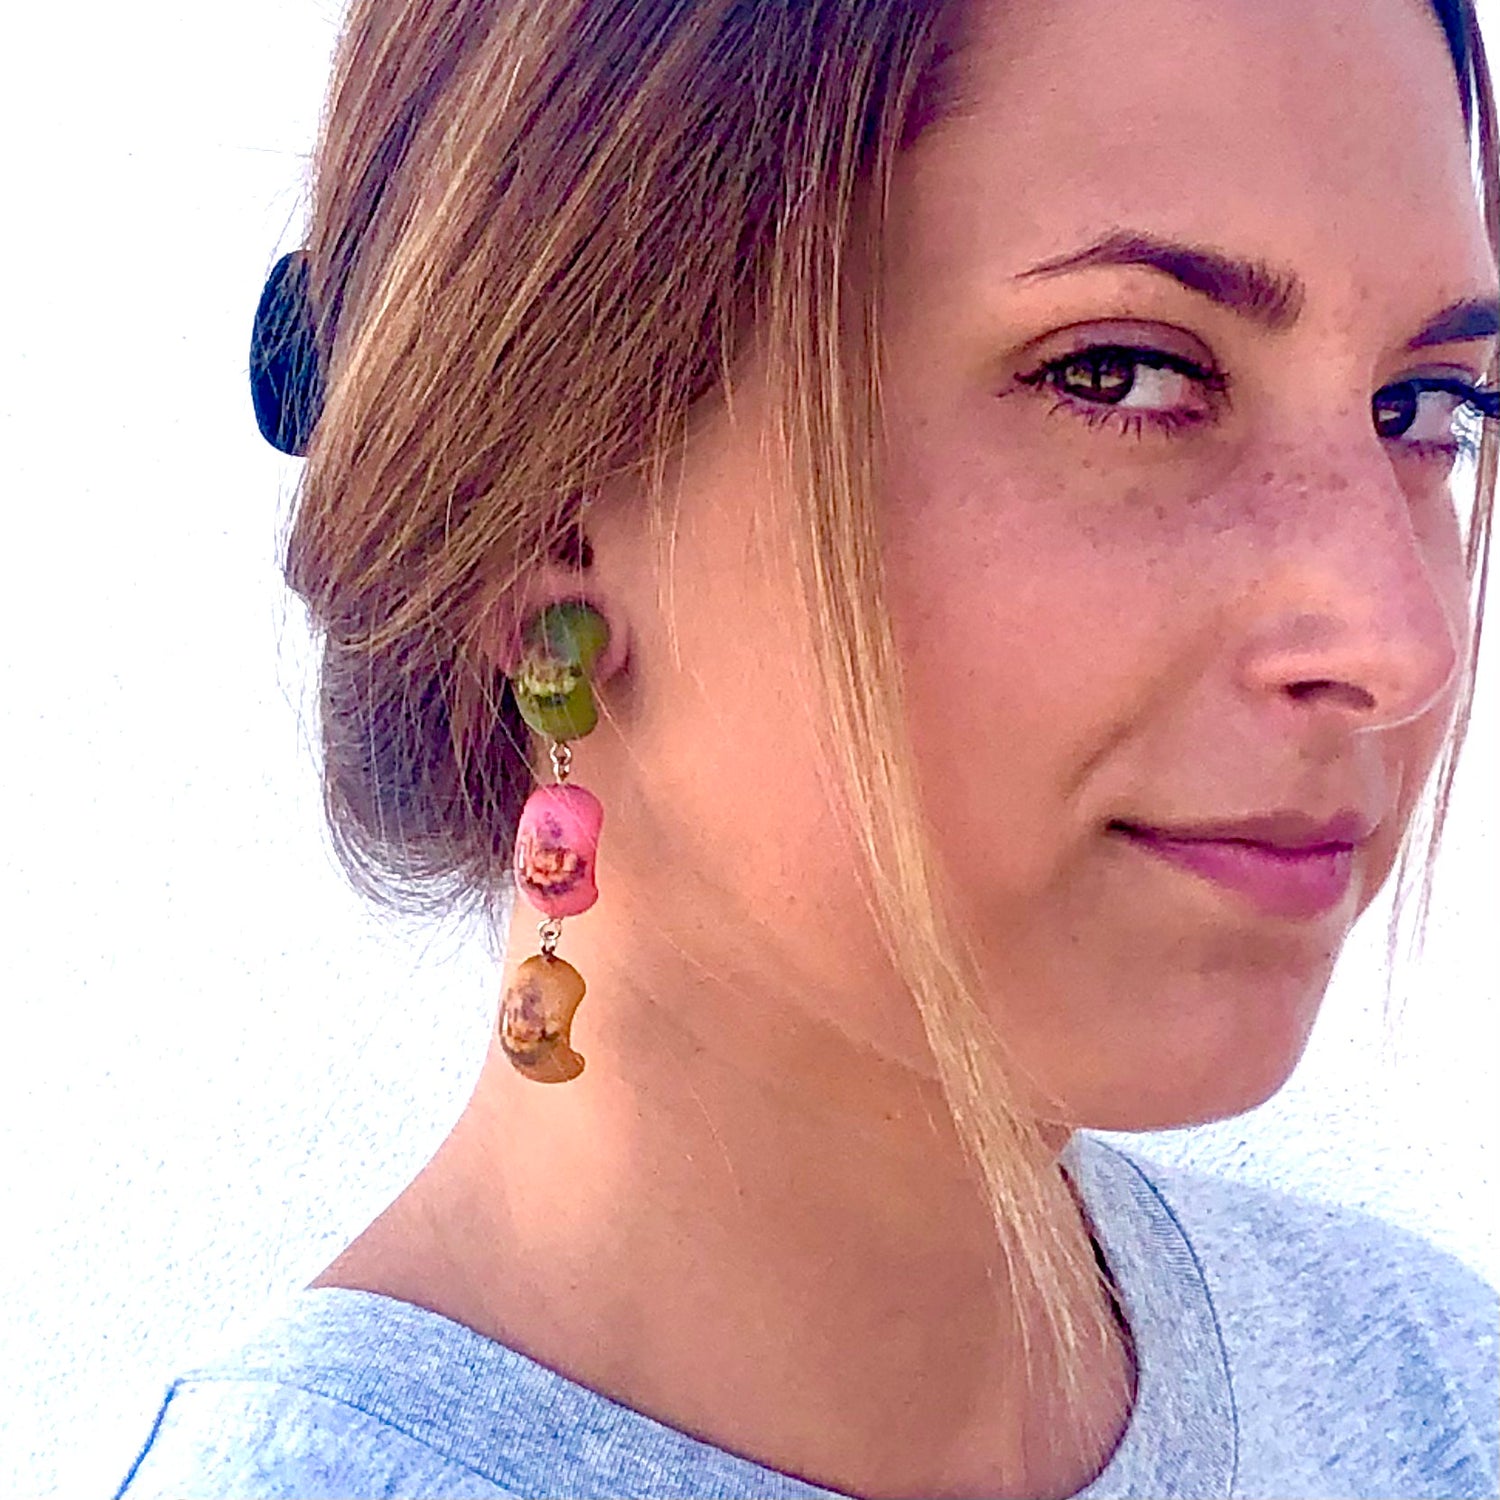 flower statement earrings